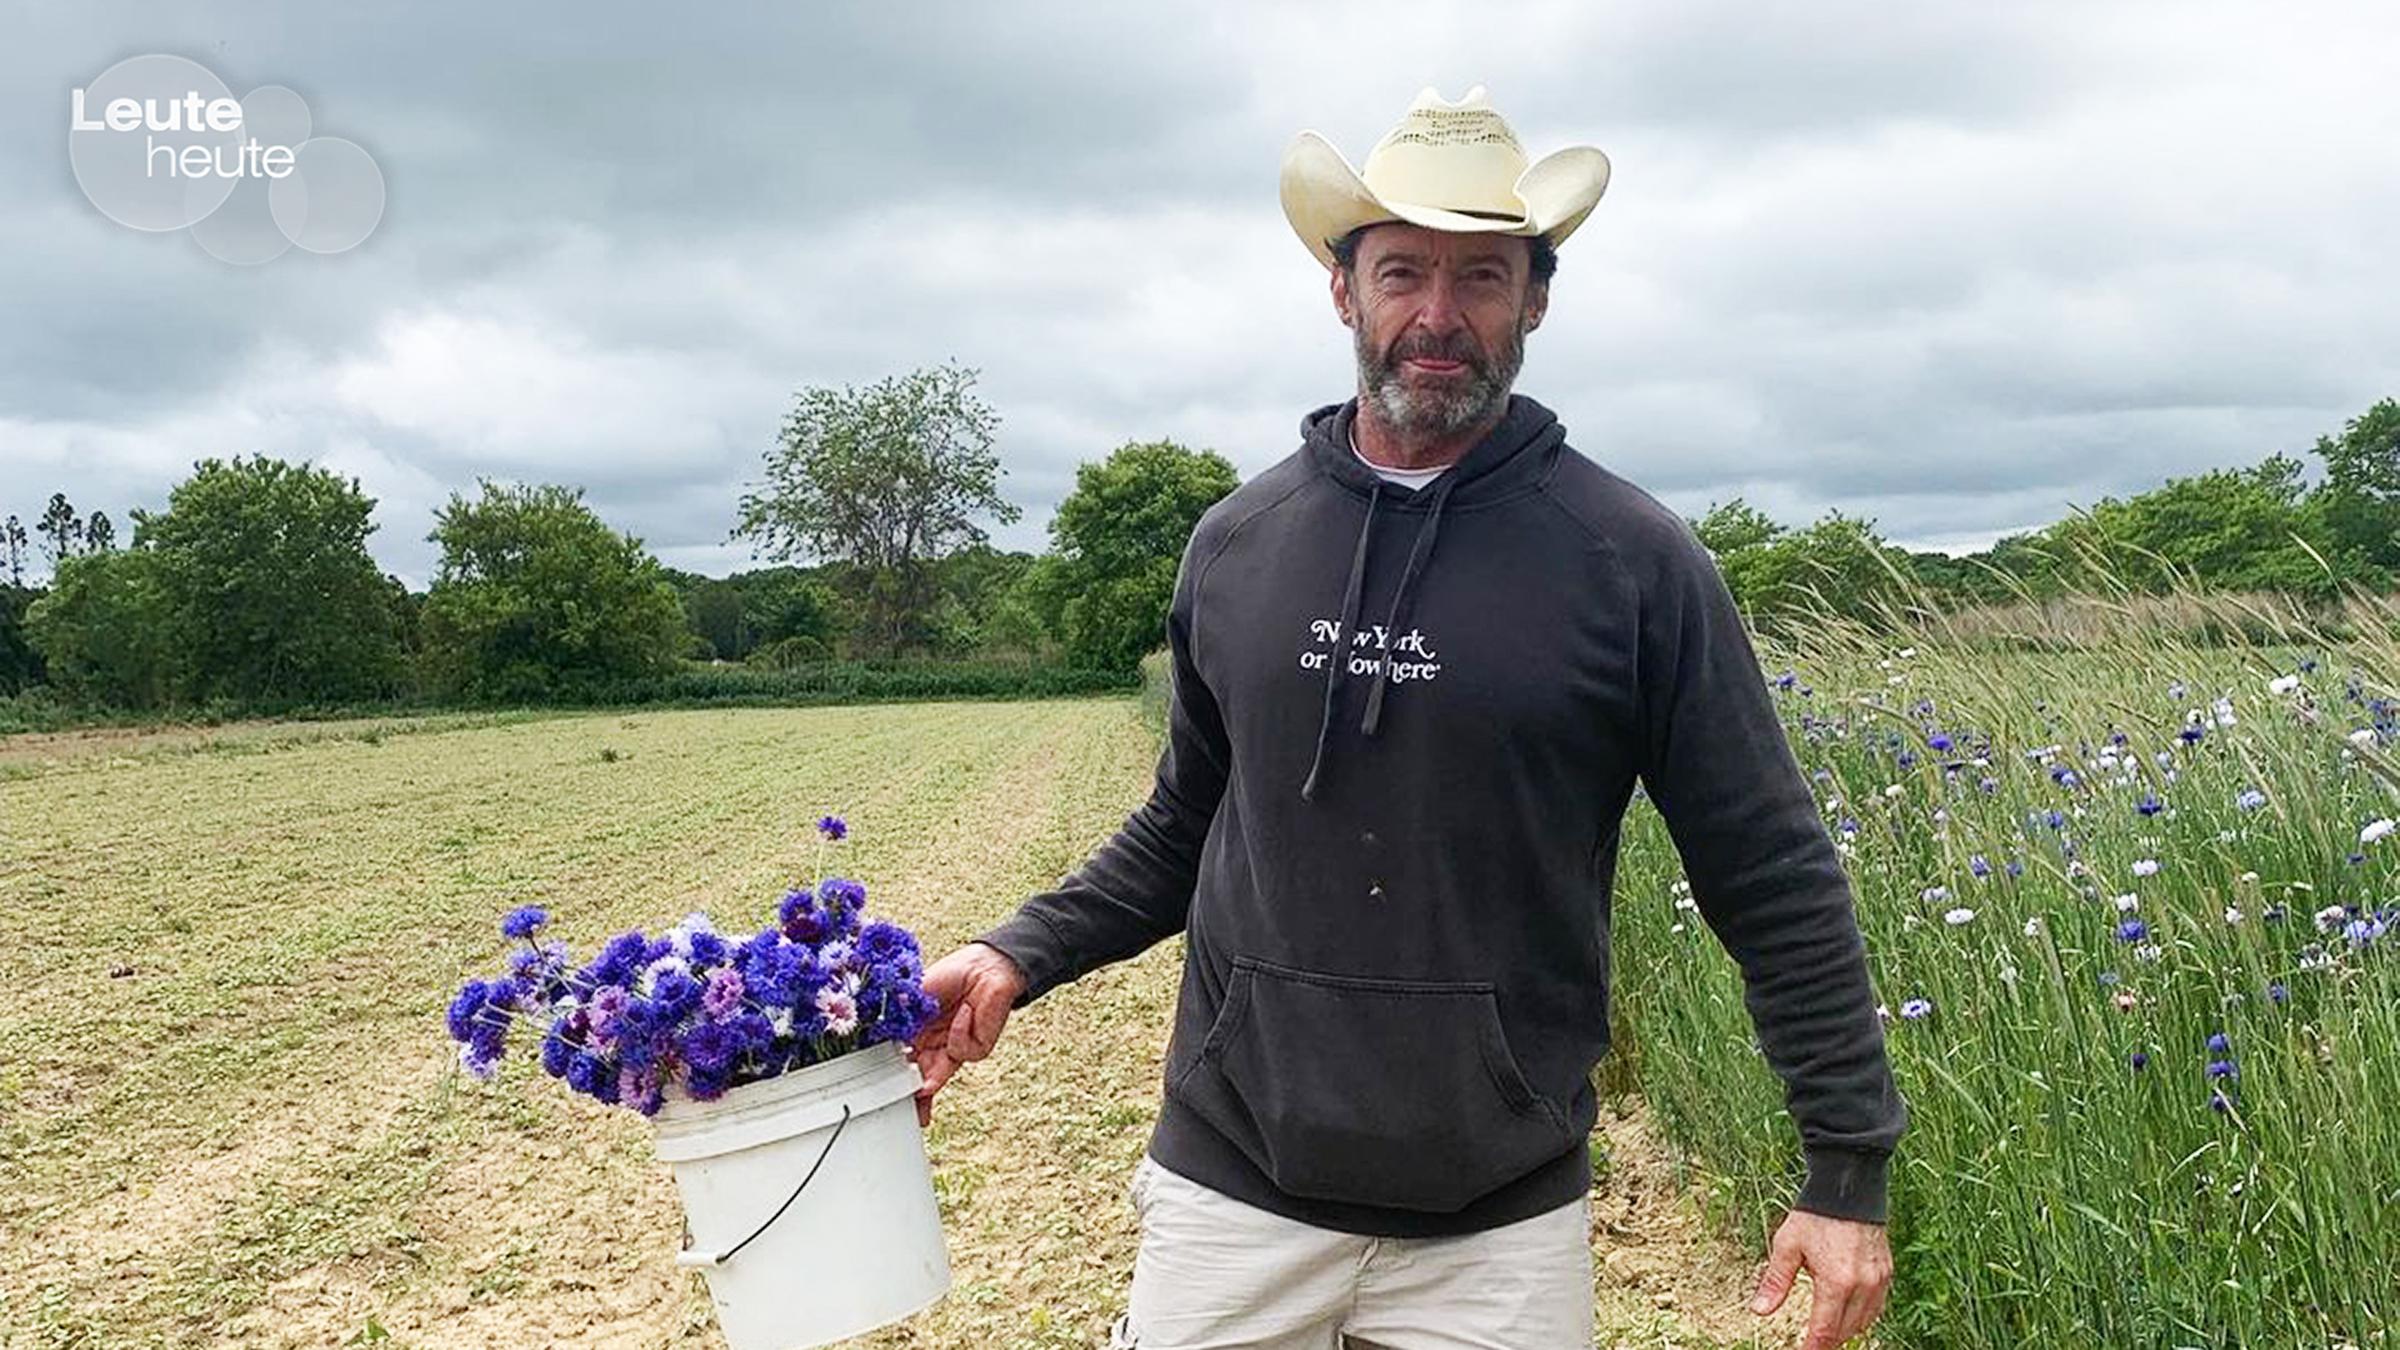 Schauspieler Hugh Jackman auf einem Feld mit einem Eimer Kornblumen in der Hand.